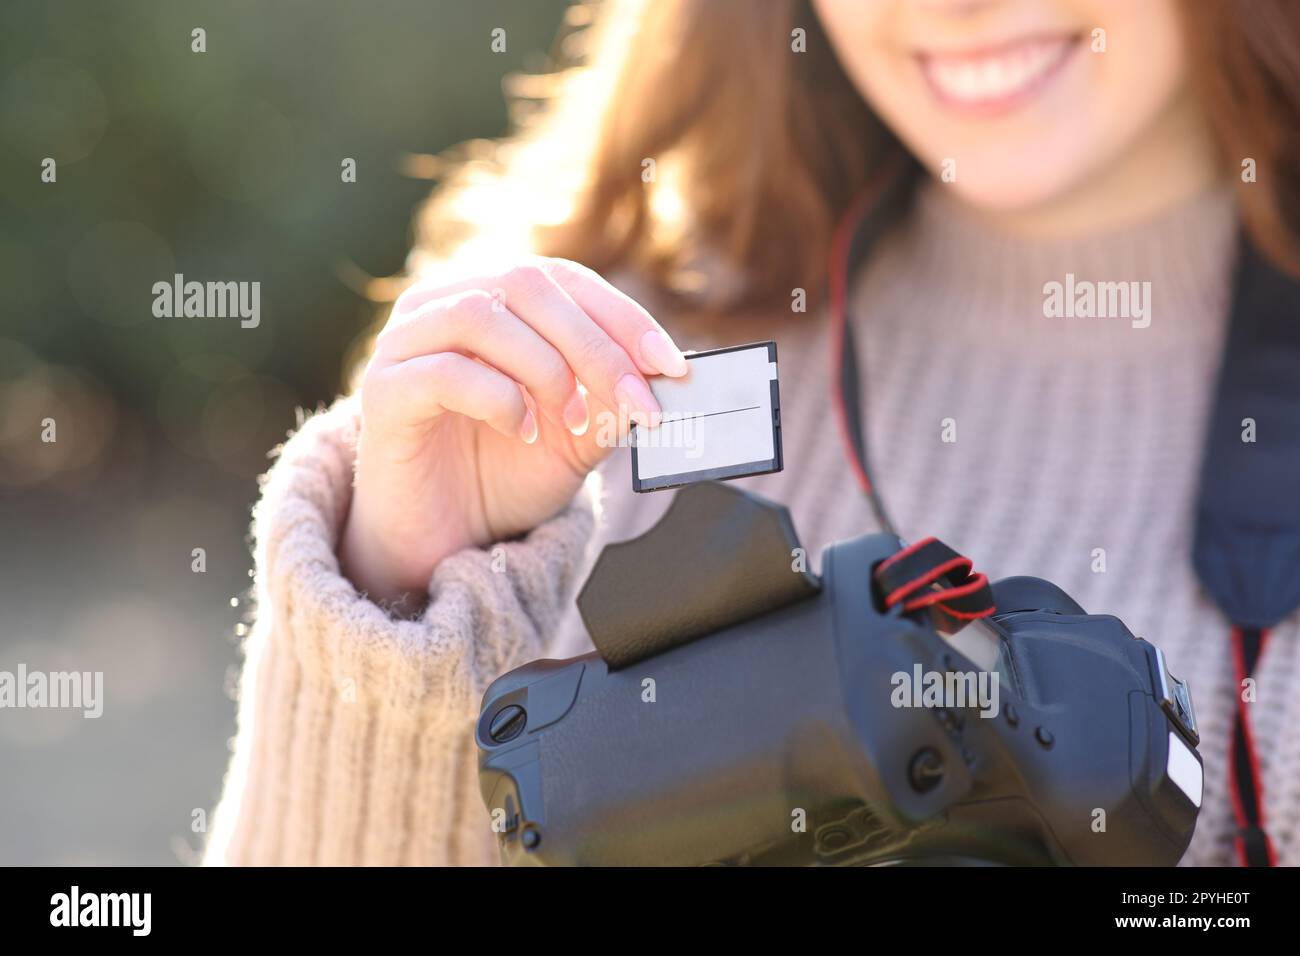 Photographe insérant la carte sur l'appareil photo reflex numérique Banque D'Images